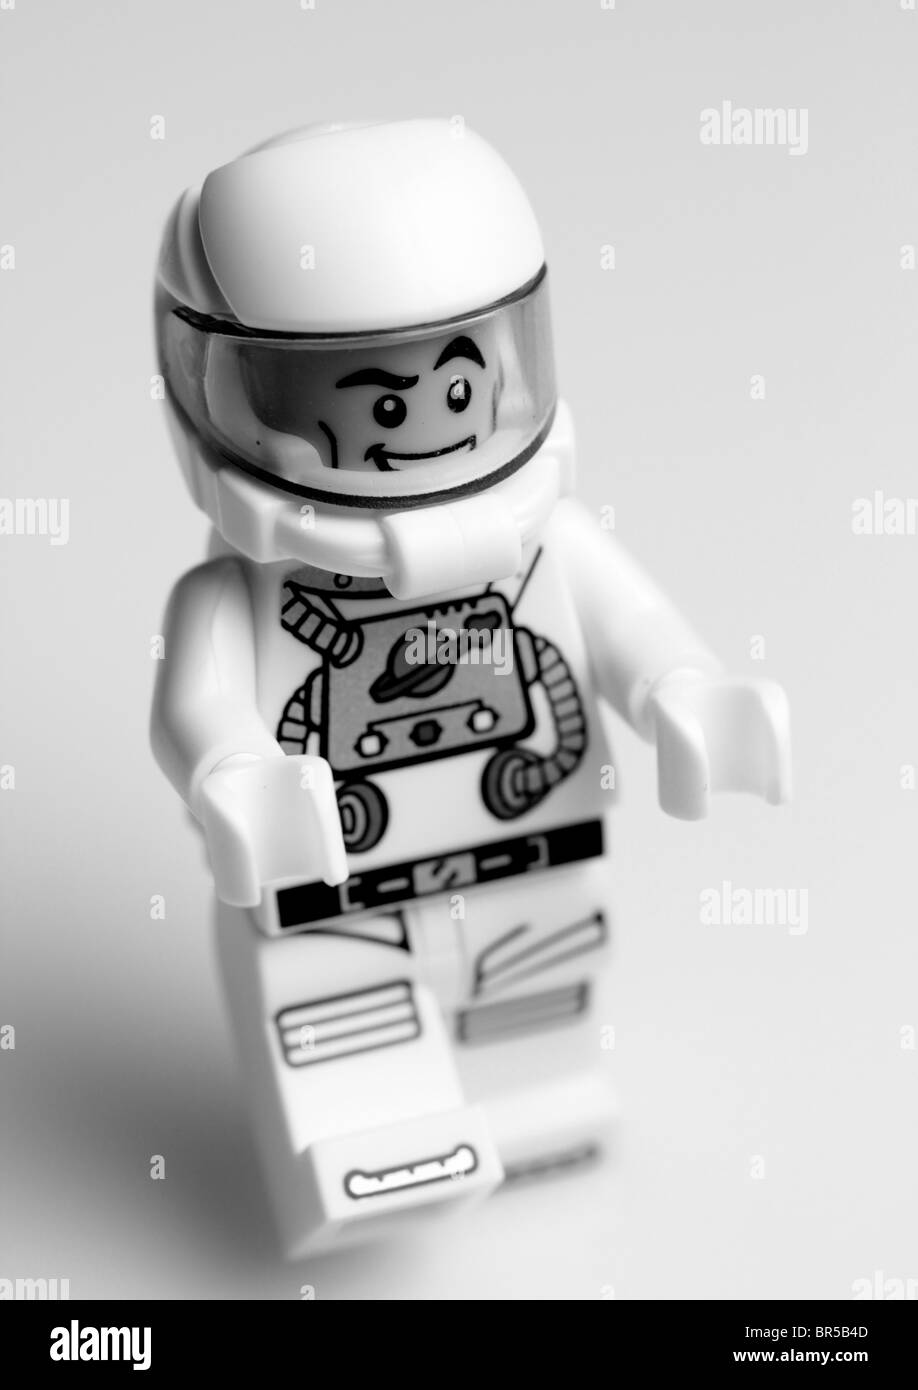 LEGO blanc Classic Espacer astronaut Figurine